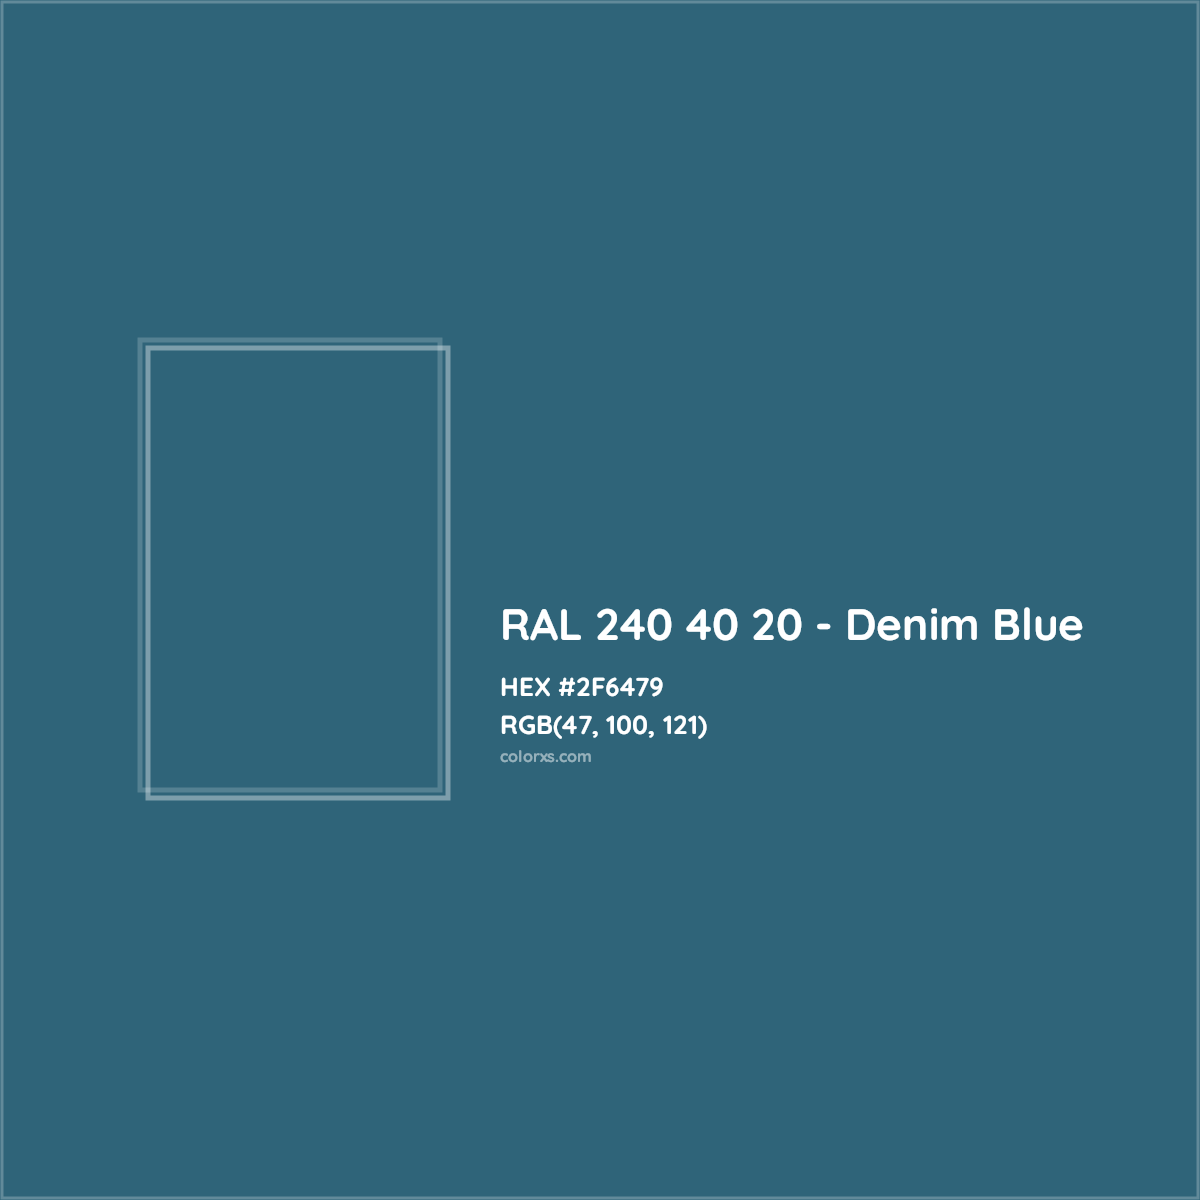 HEX #2F6479 RAL 240 40 20 - Denim Blue CMS RAL Design - Color Code